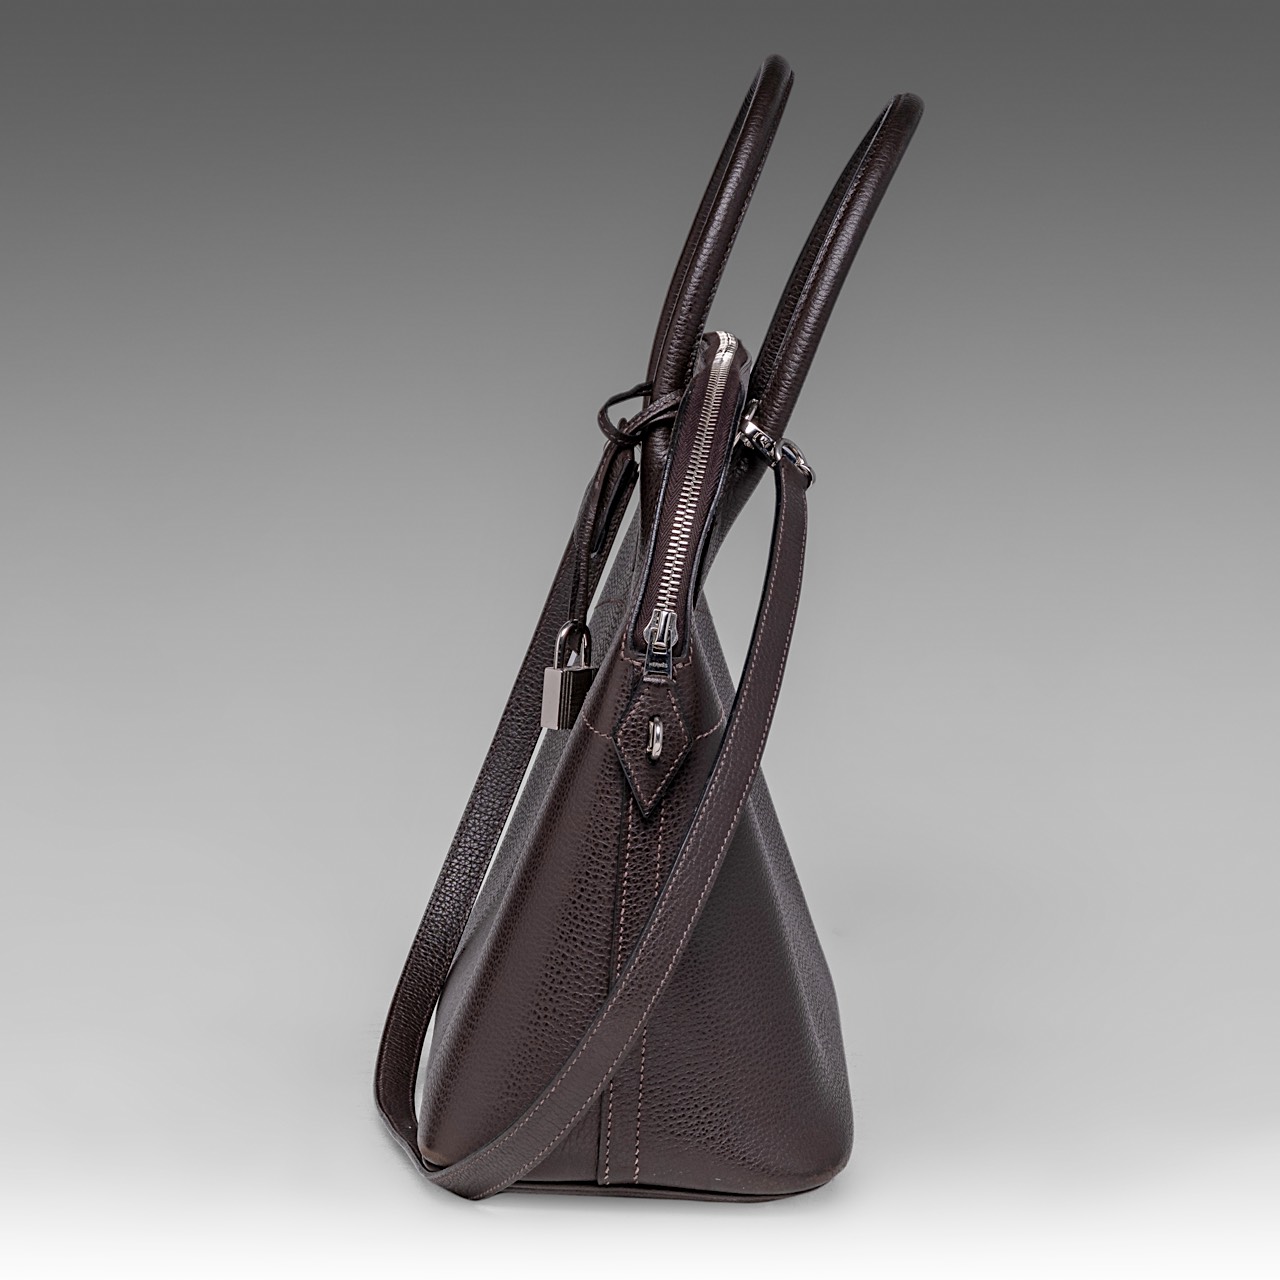 A Hermes bolide 34 CK brown veau epsom handbag, H 28 - W 37 - D 14 cm - Image 4 of 15